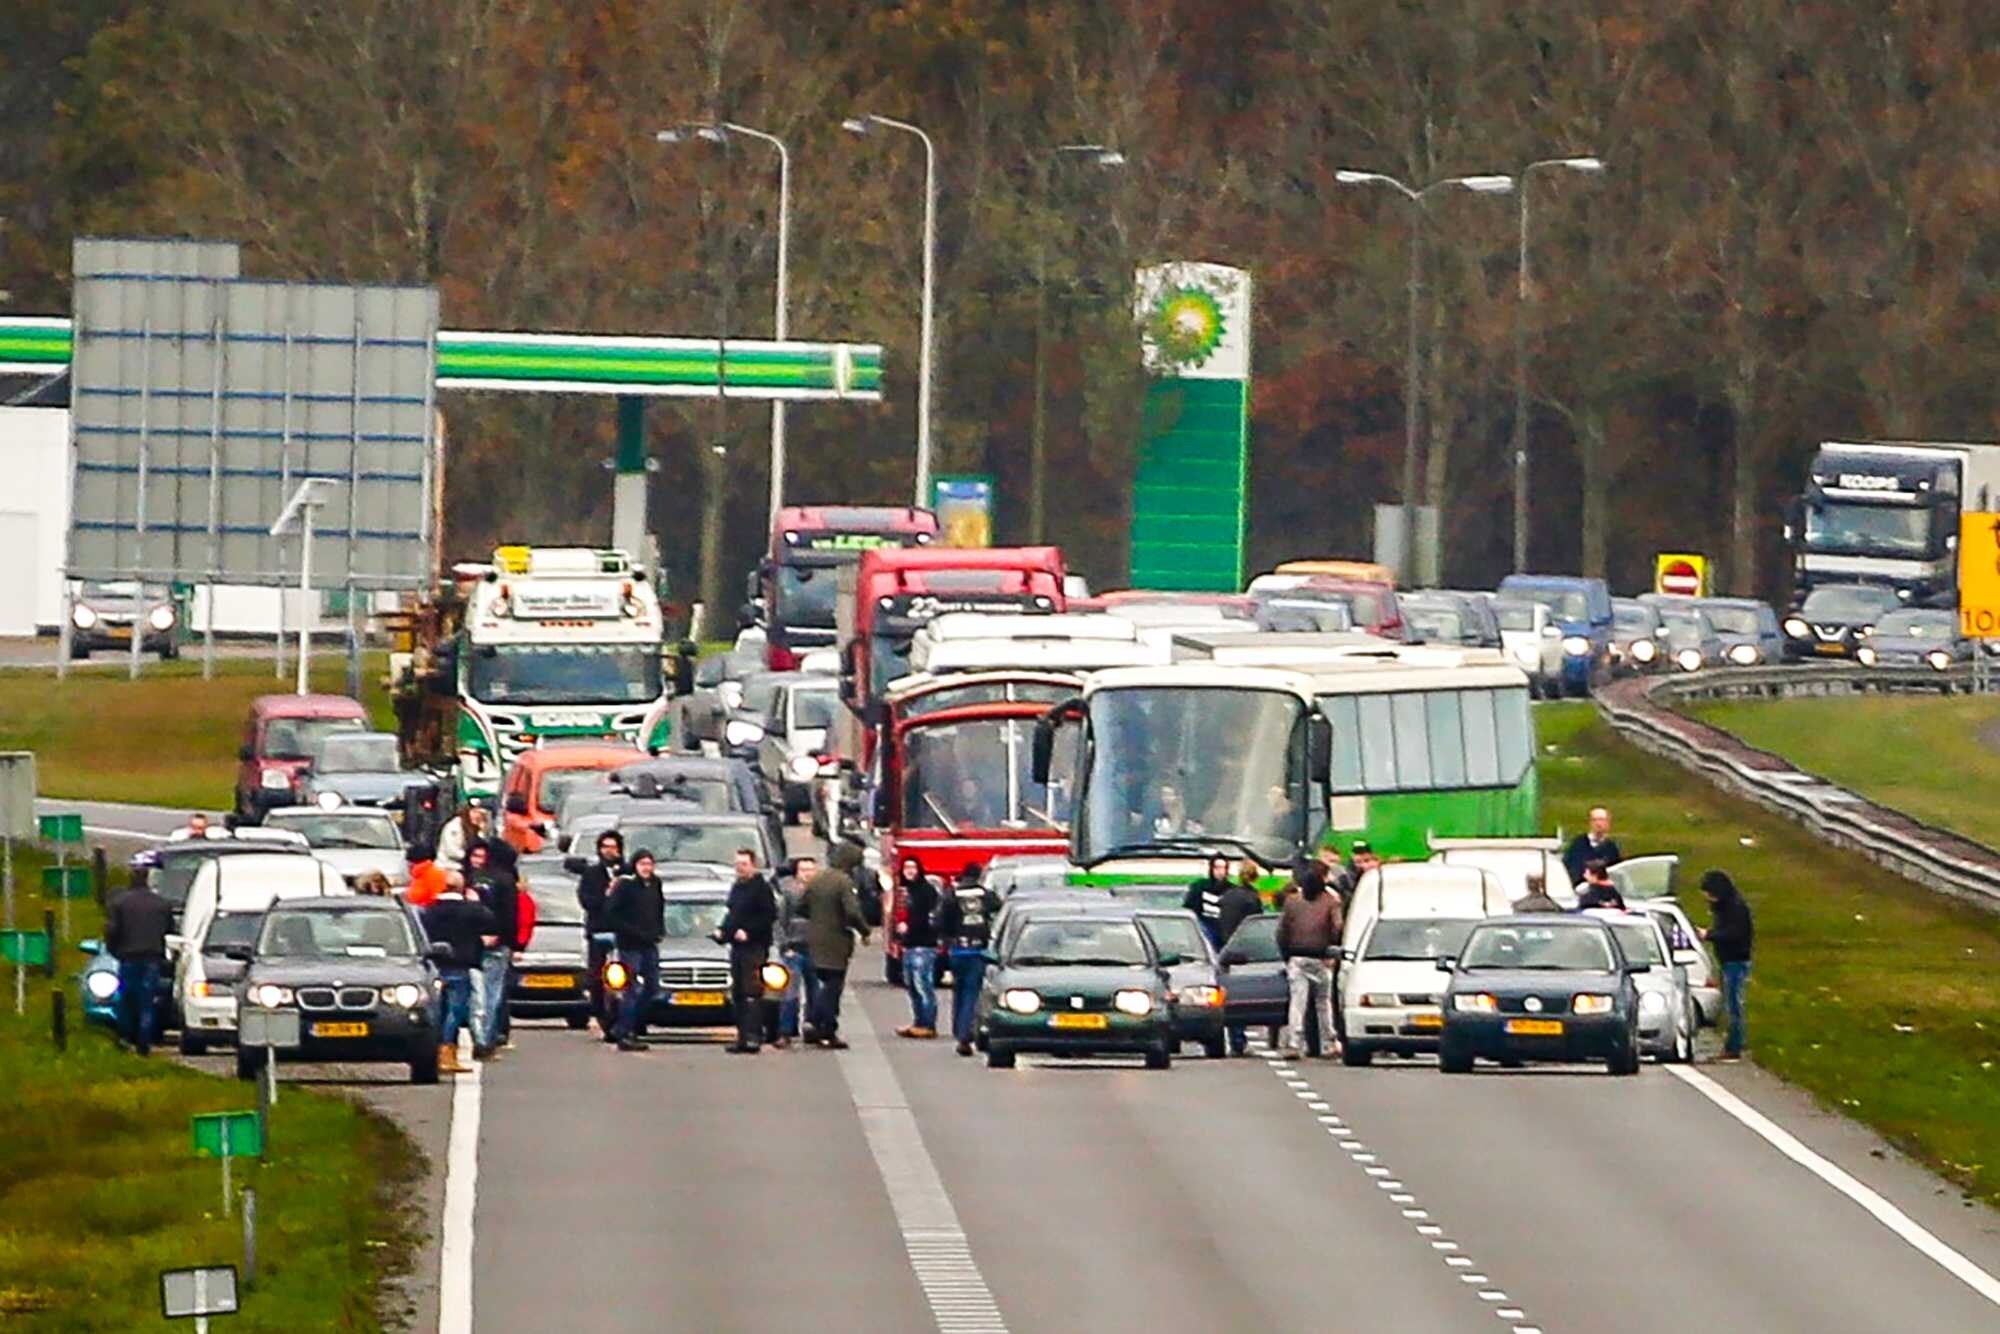 Bussen geraken niet tot bij landelijke Nederlandse Sint-intocht